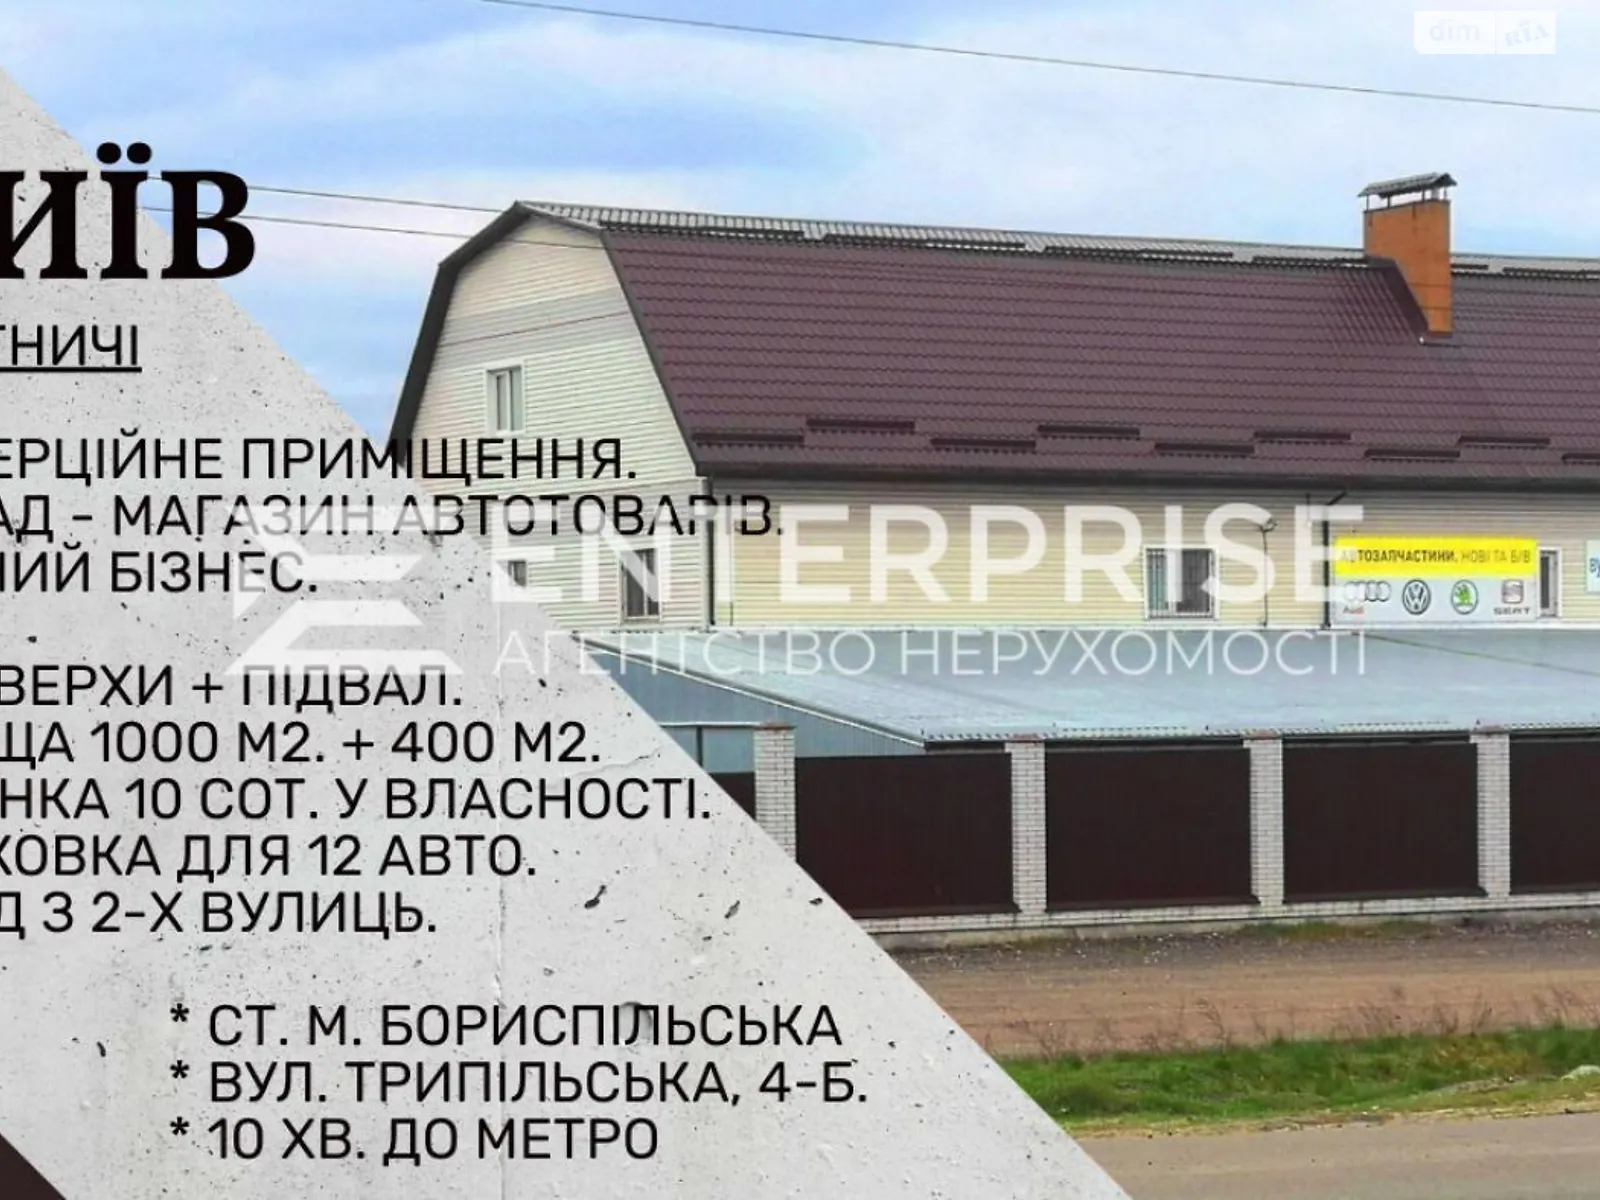 Бортничи,Киев, цена: 410000 $